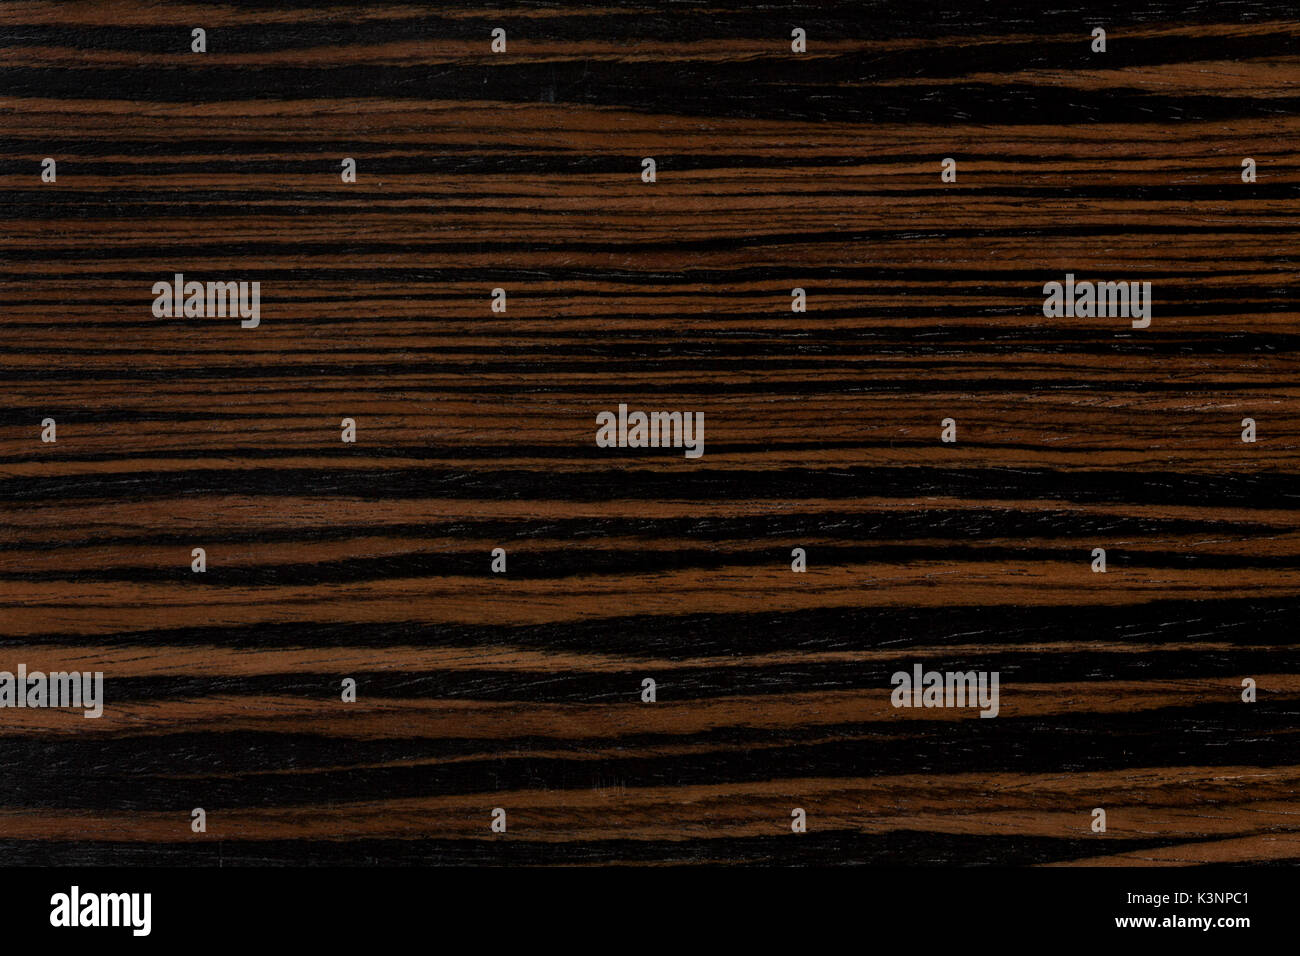 Dark ebony wood background. Stock Photo